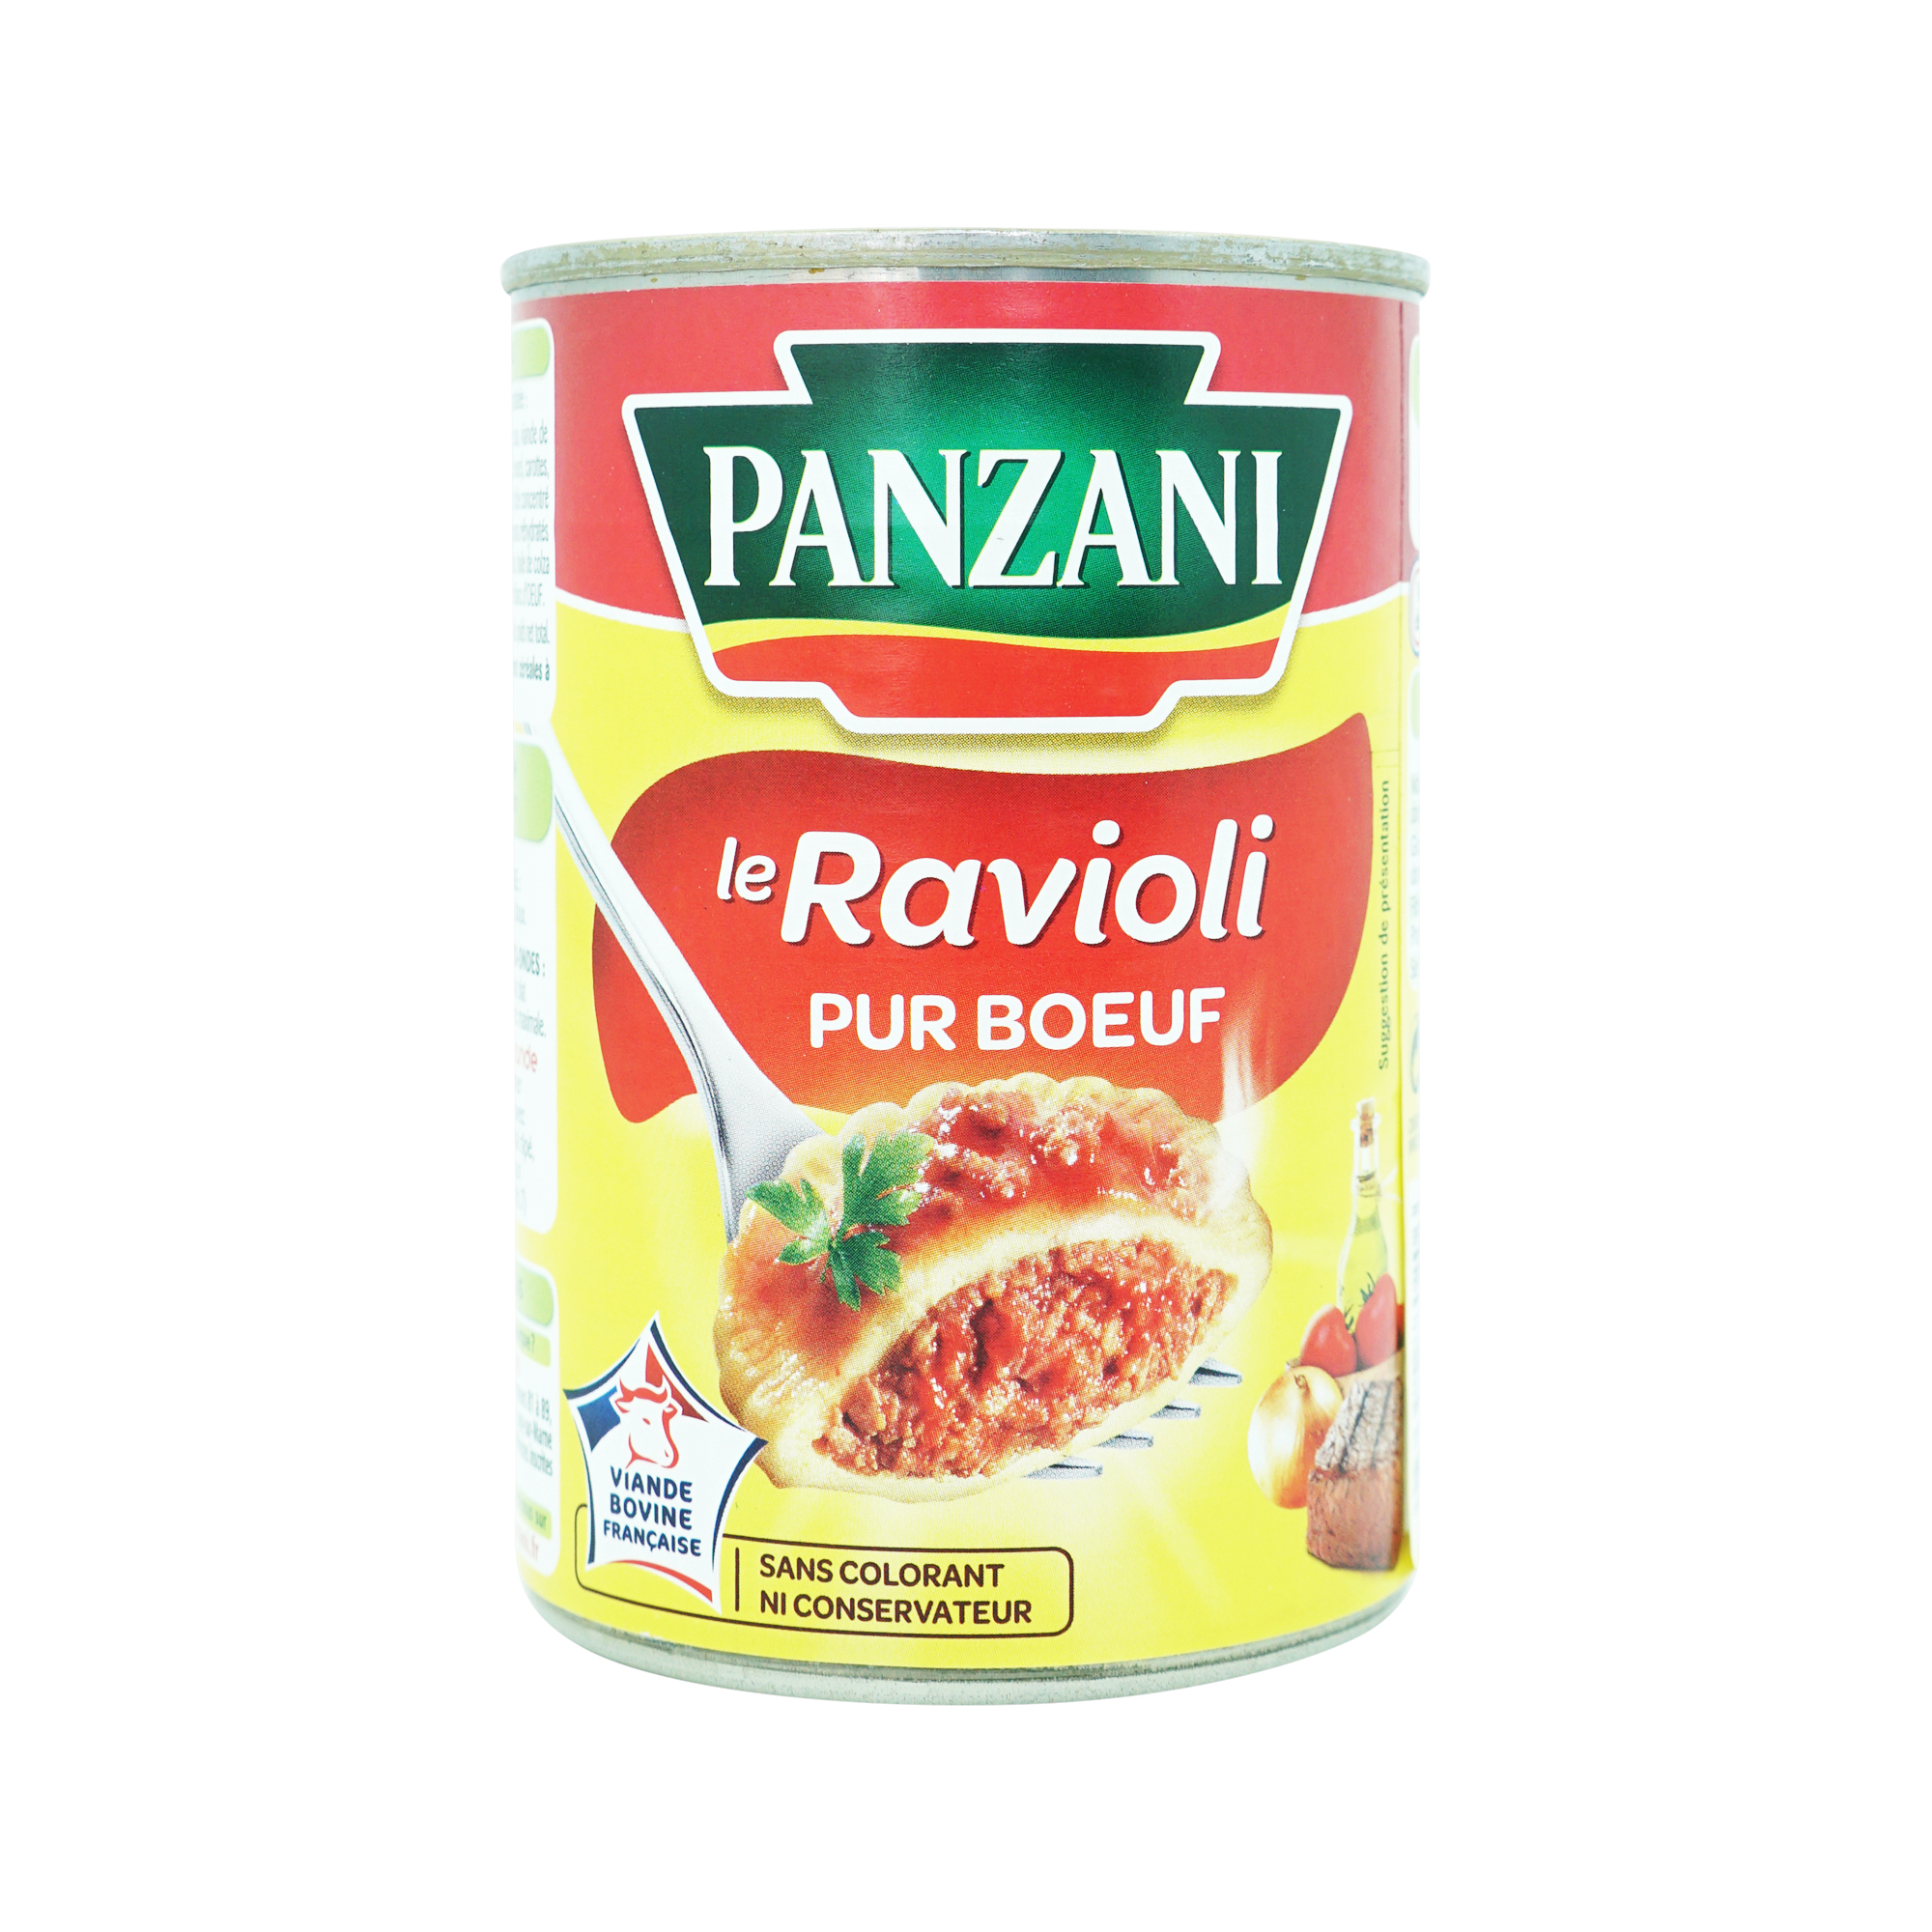 Panzani Le Ravioli aux Fromages La conserve de 800G